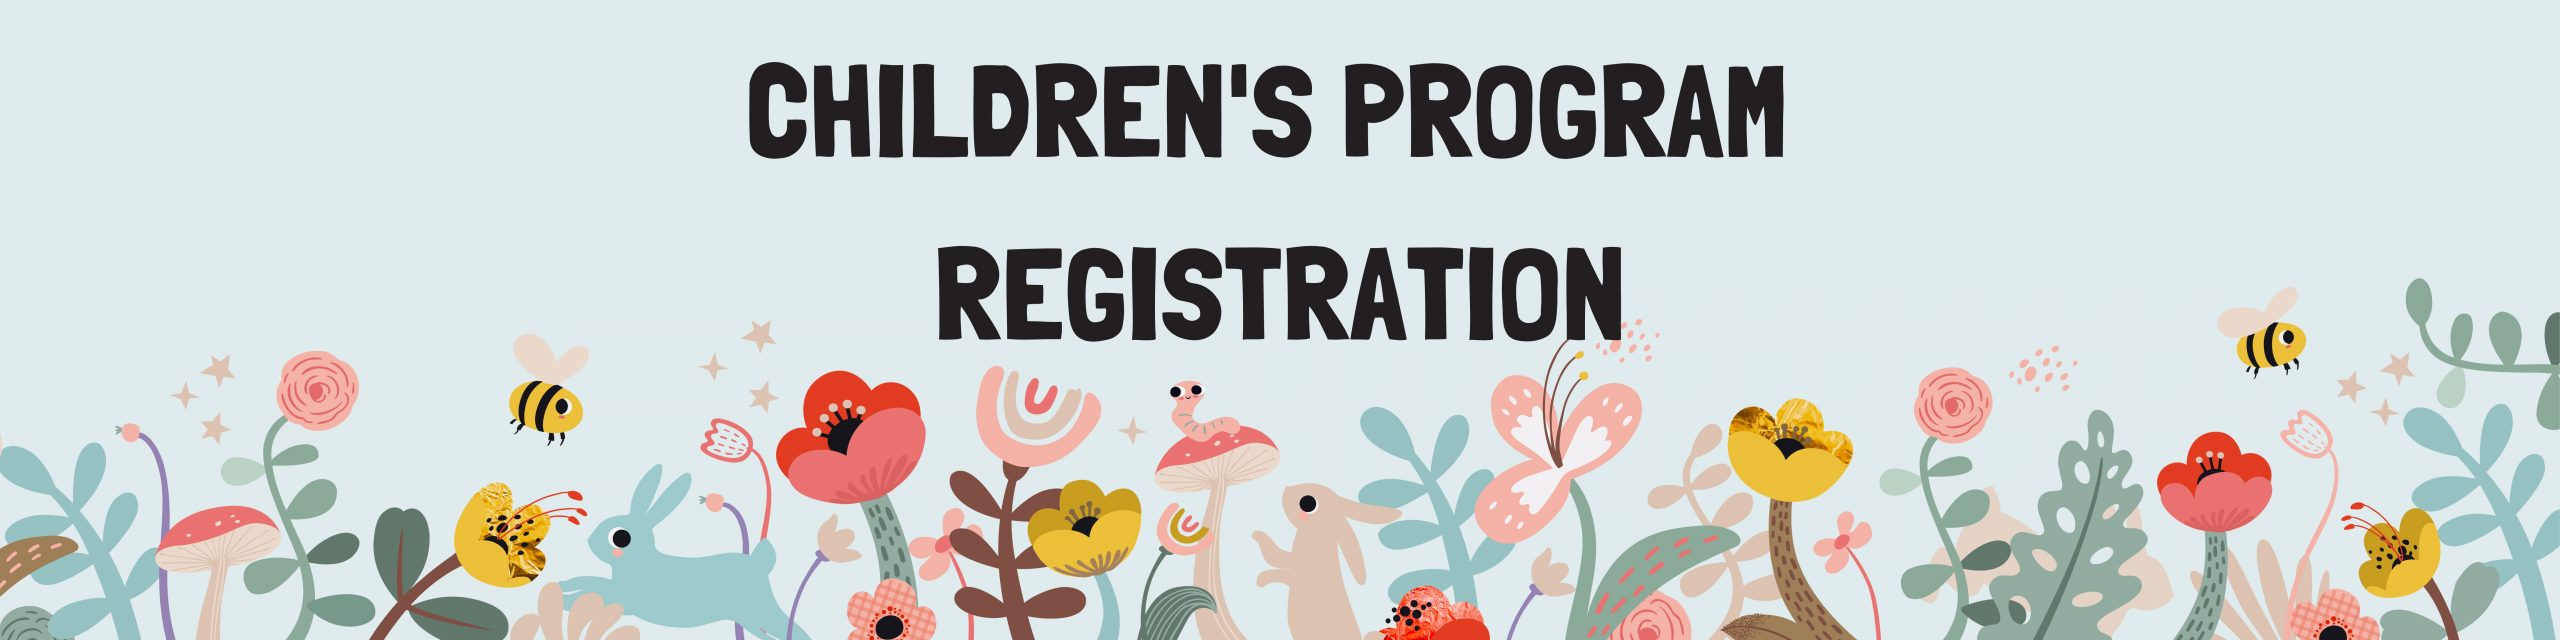 Children's Program Registration 